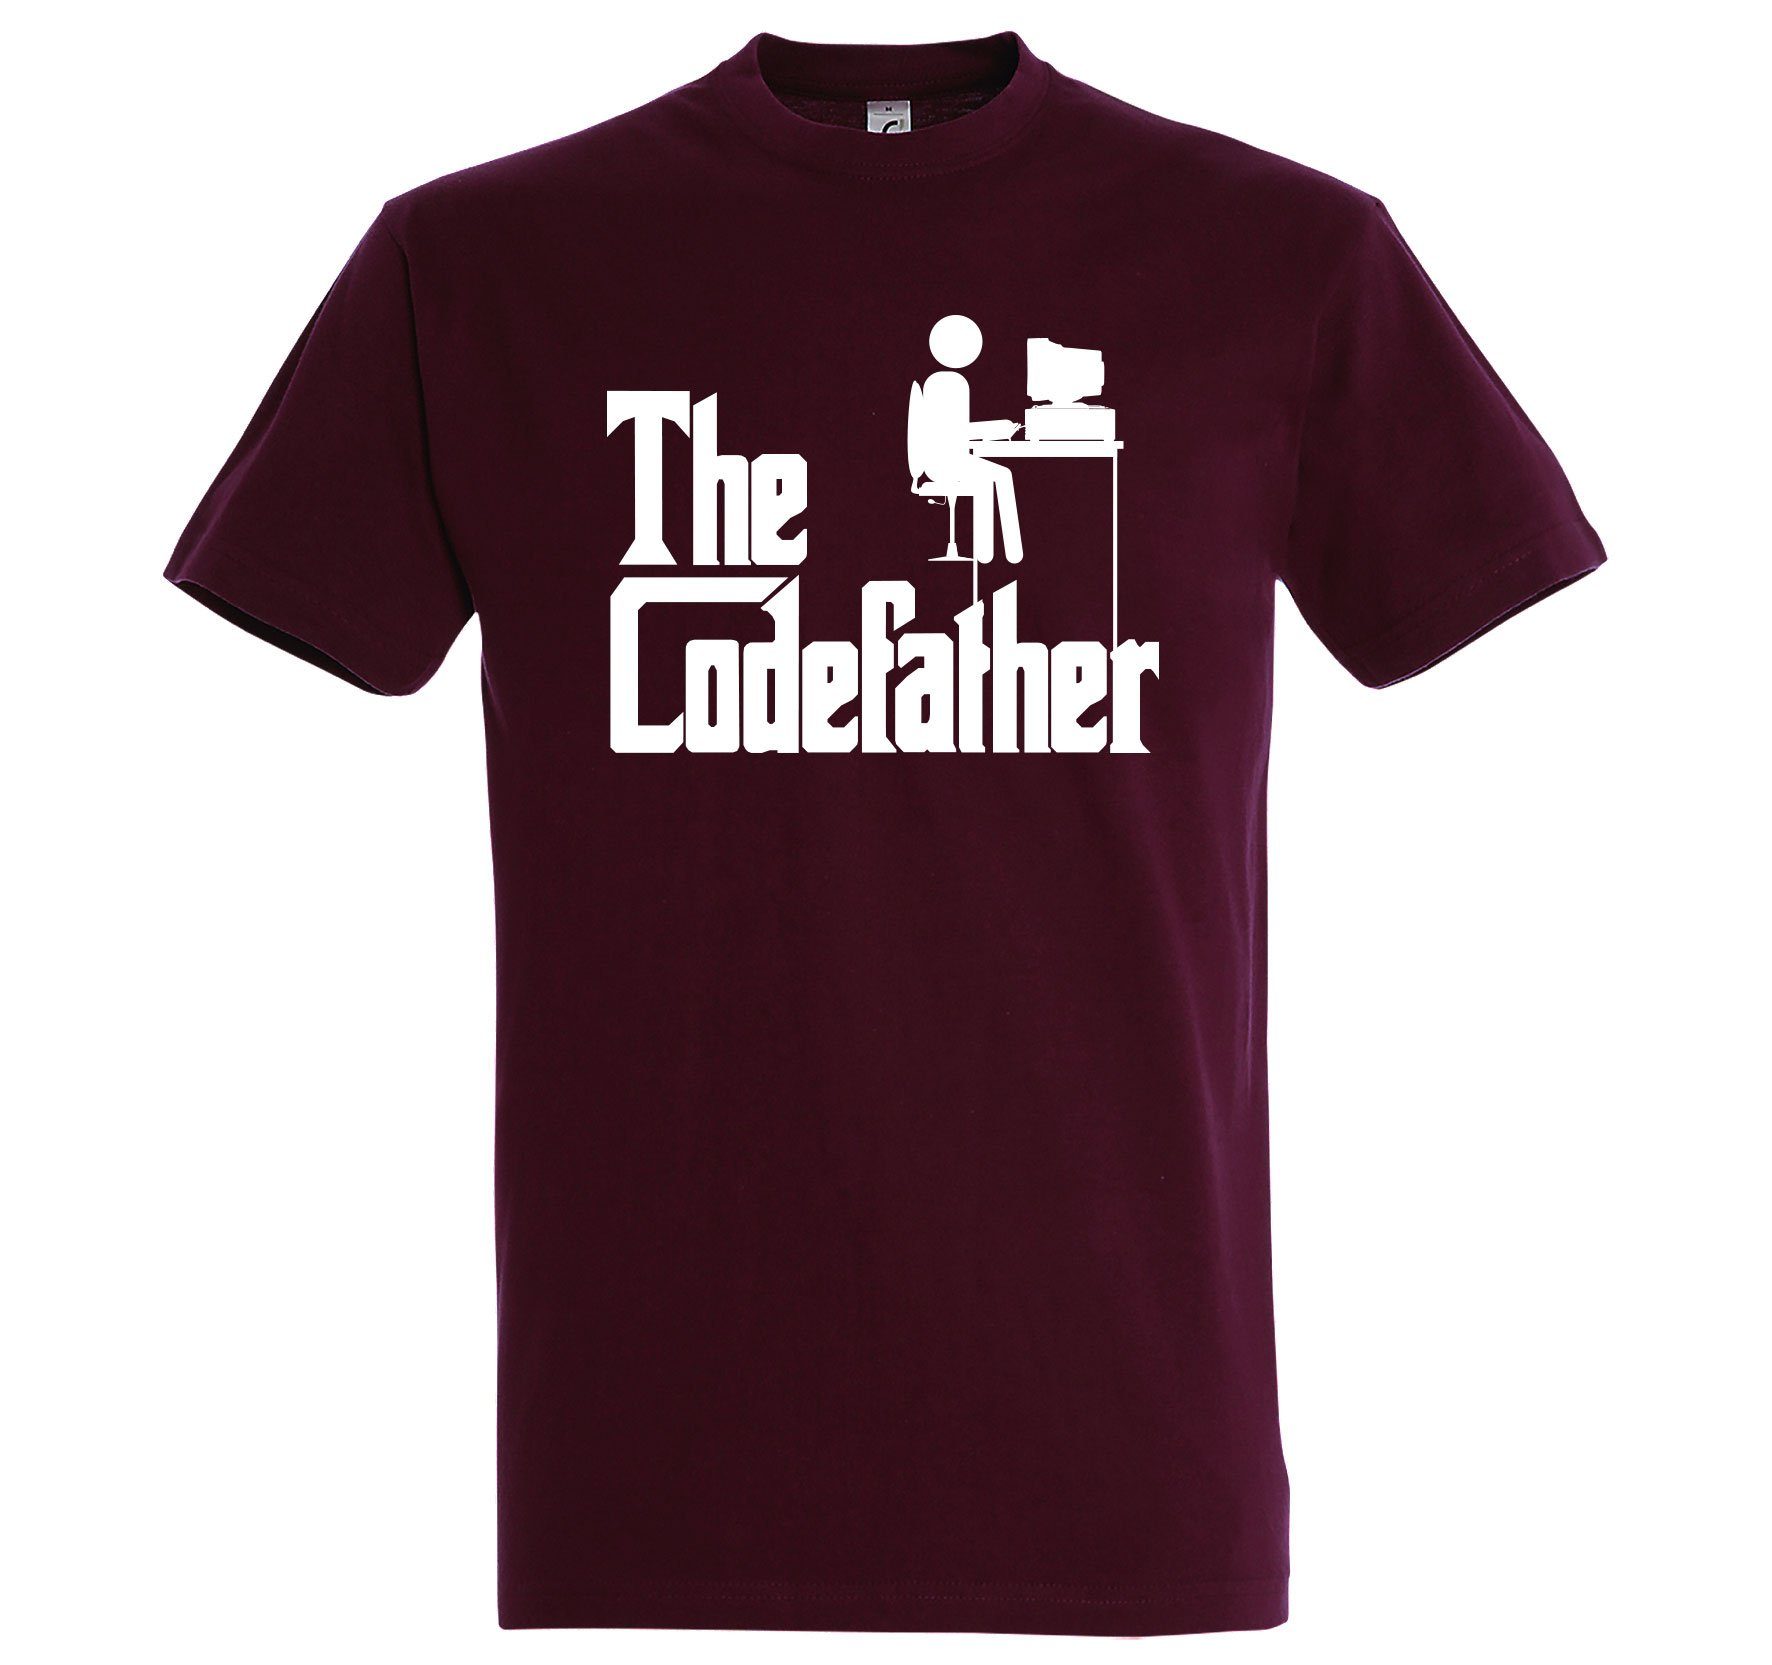 Youth lustigem Herren Designz T-Shirt Codefather Burgund mit The Frontprint T-Shirt